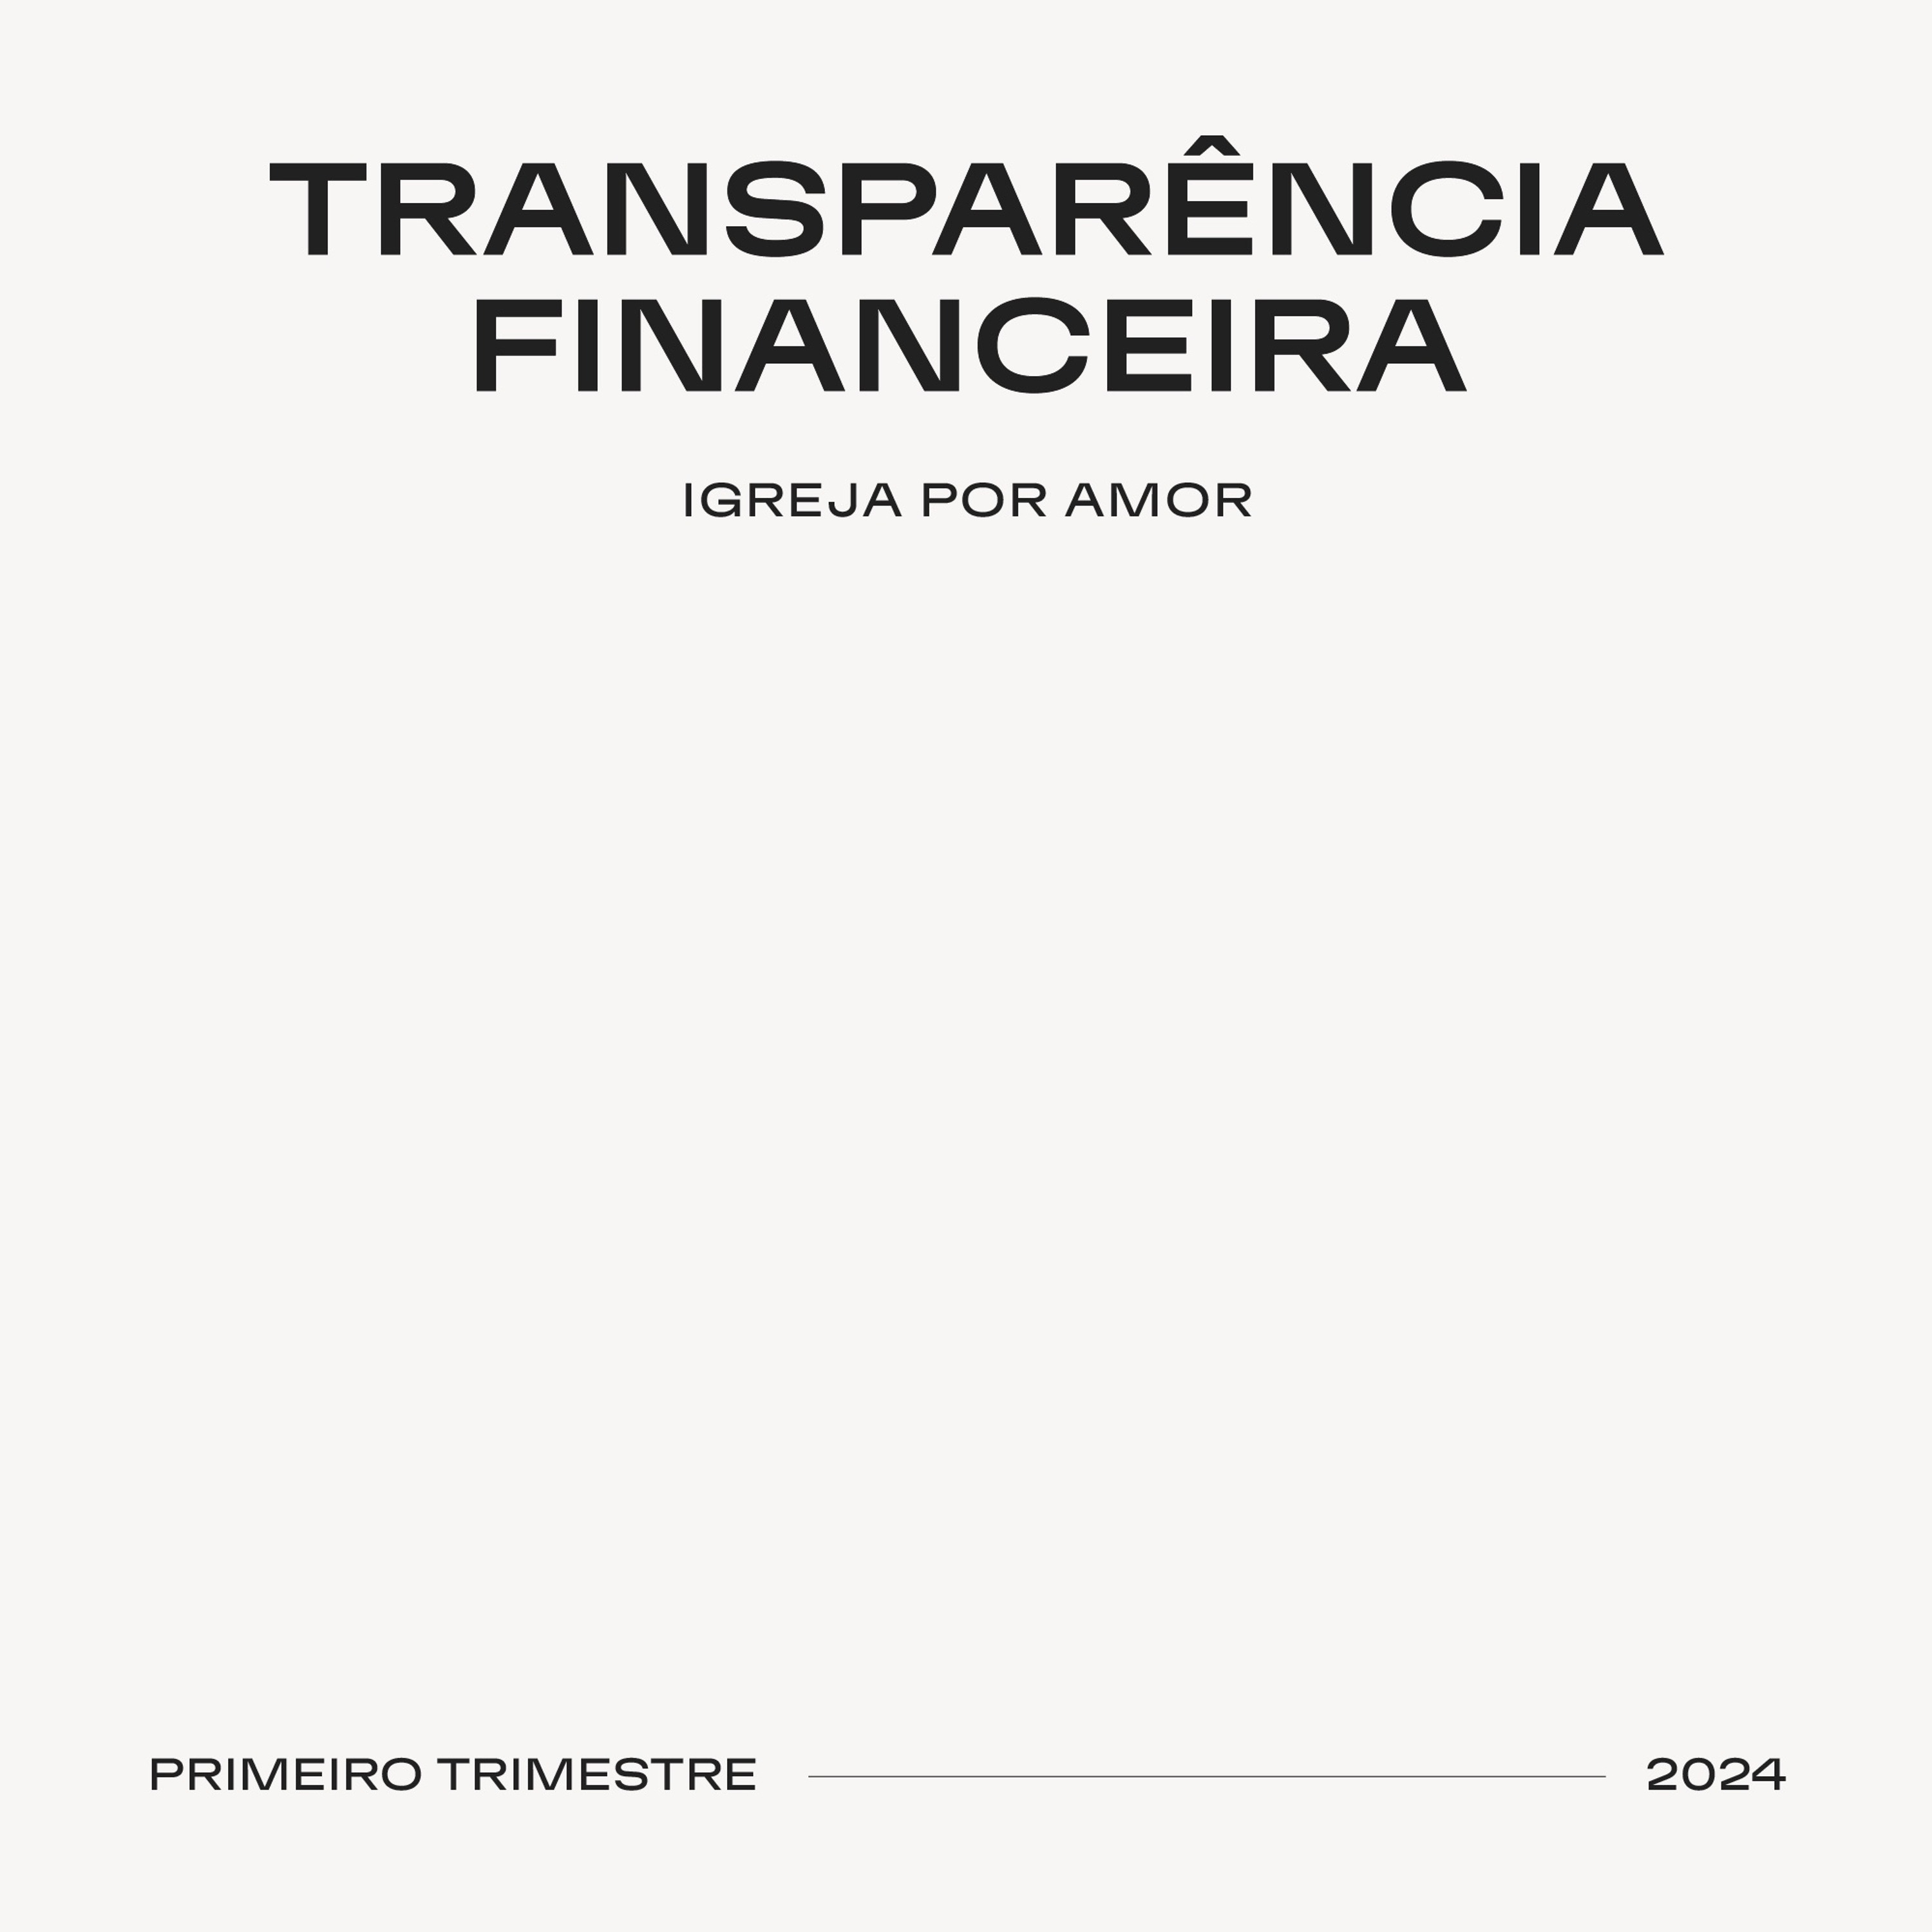 Transparência Financeira  | Igreja Por Amor | Primeiro Trimestre 2024